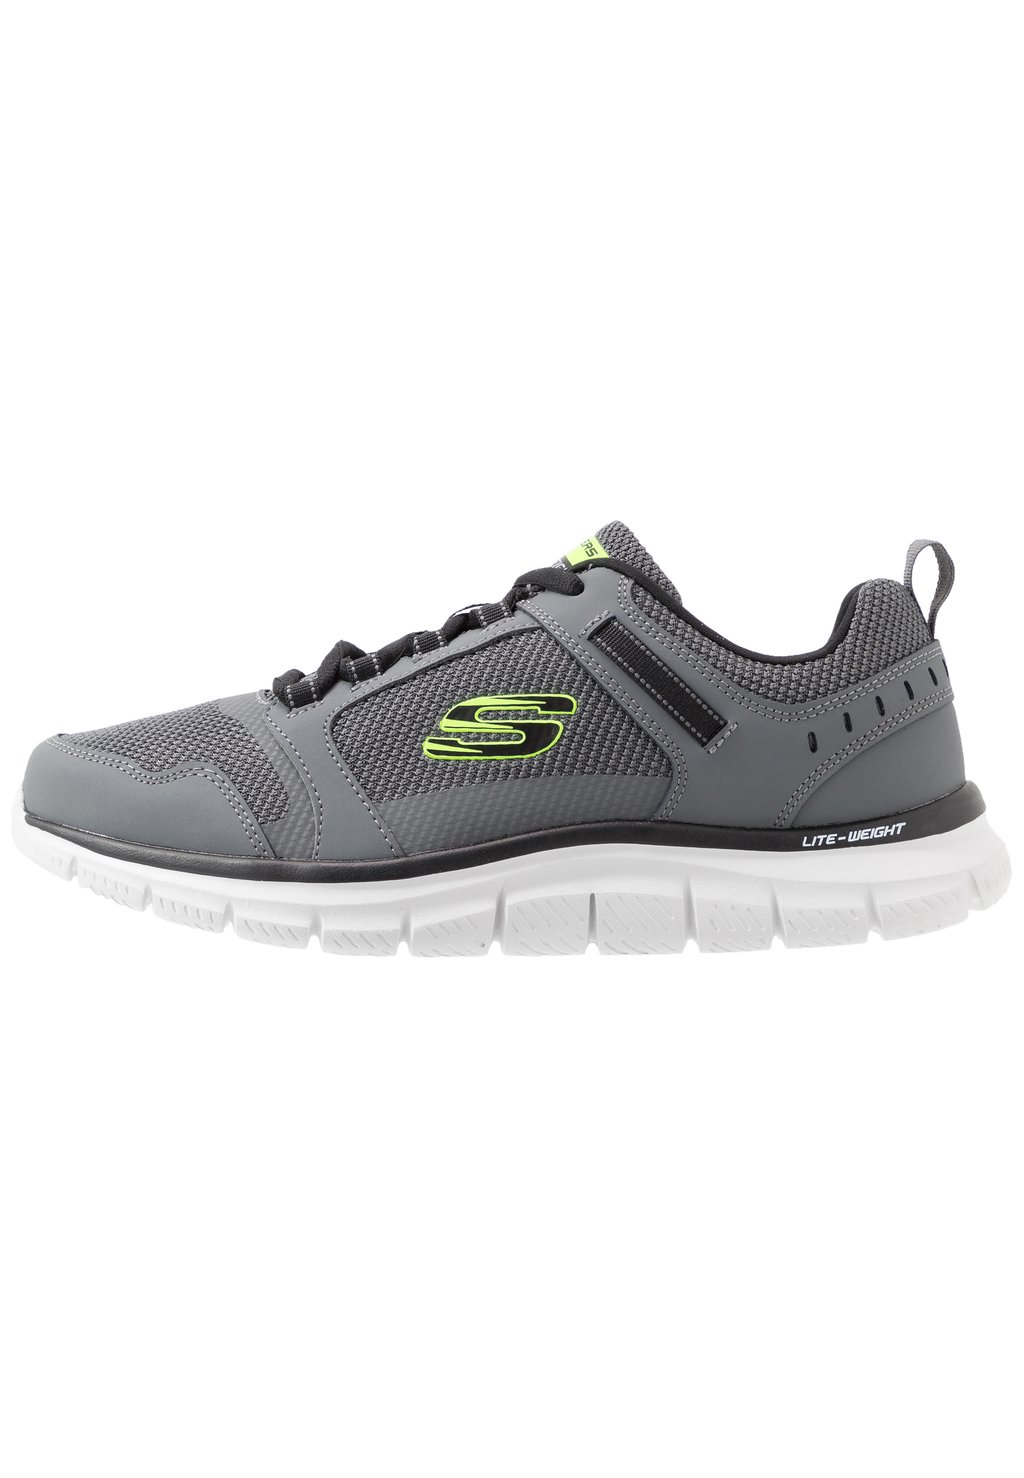 Низкие кроссовки Track Skechers Sport, цвет charcoal/black кроссовки низкие flex advantage 5 0 skechers sport цвет gray charcoal